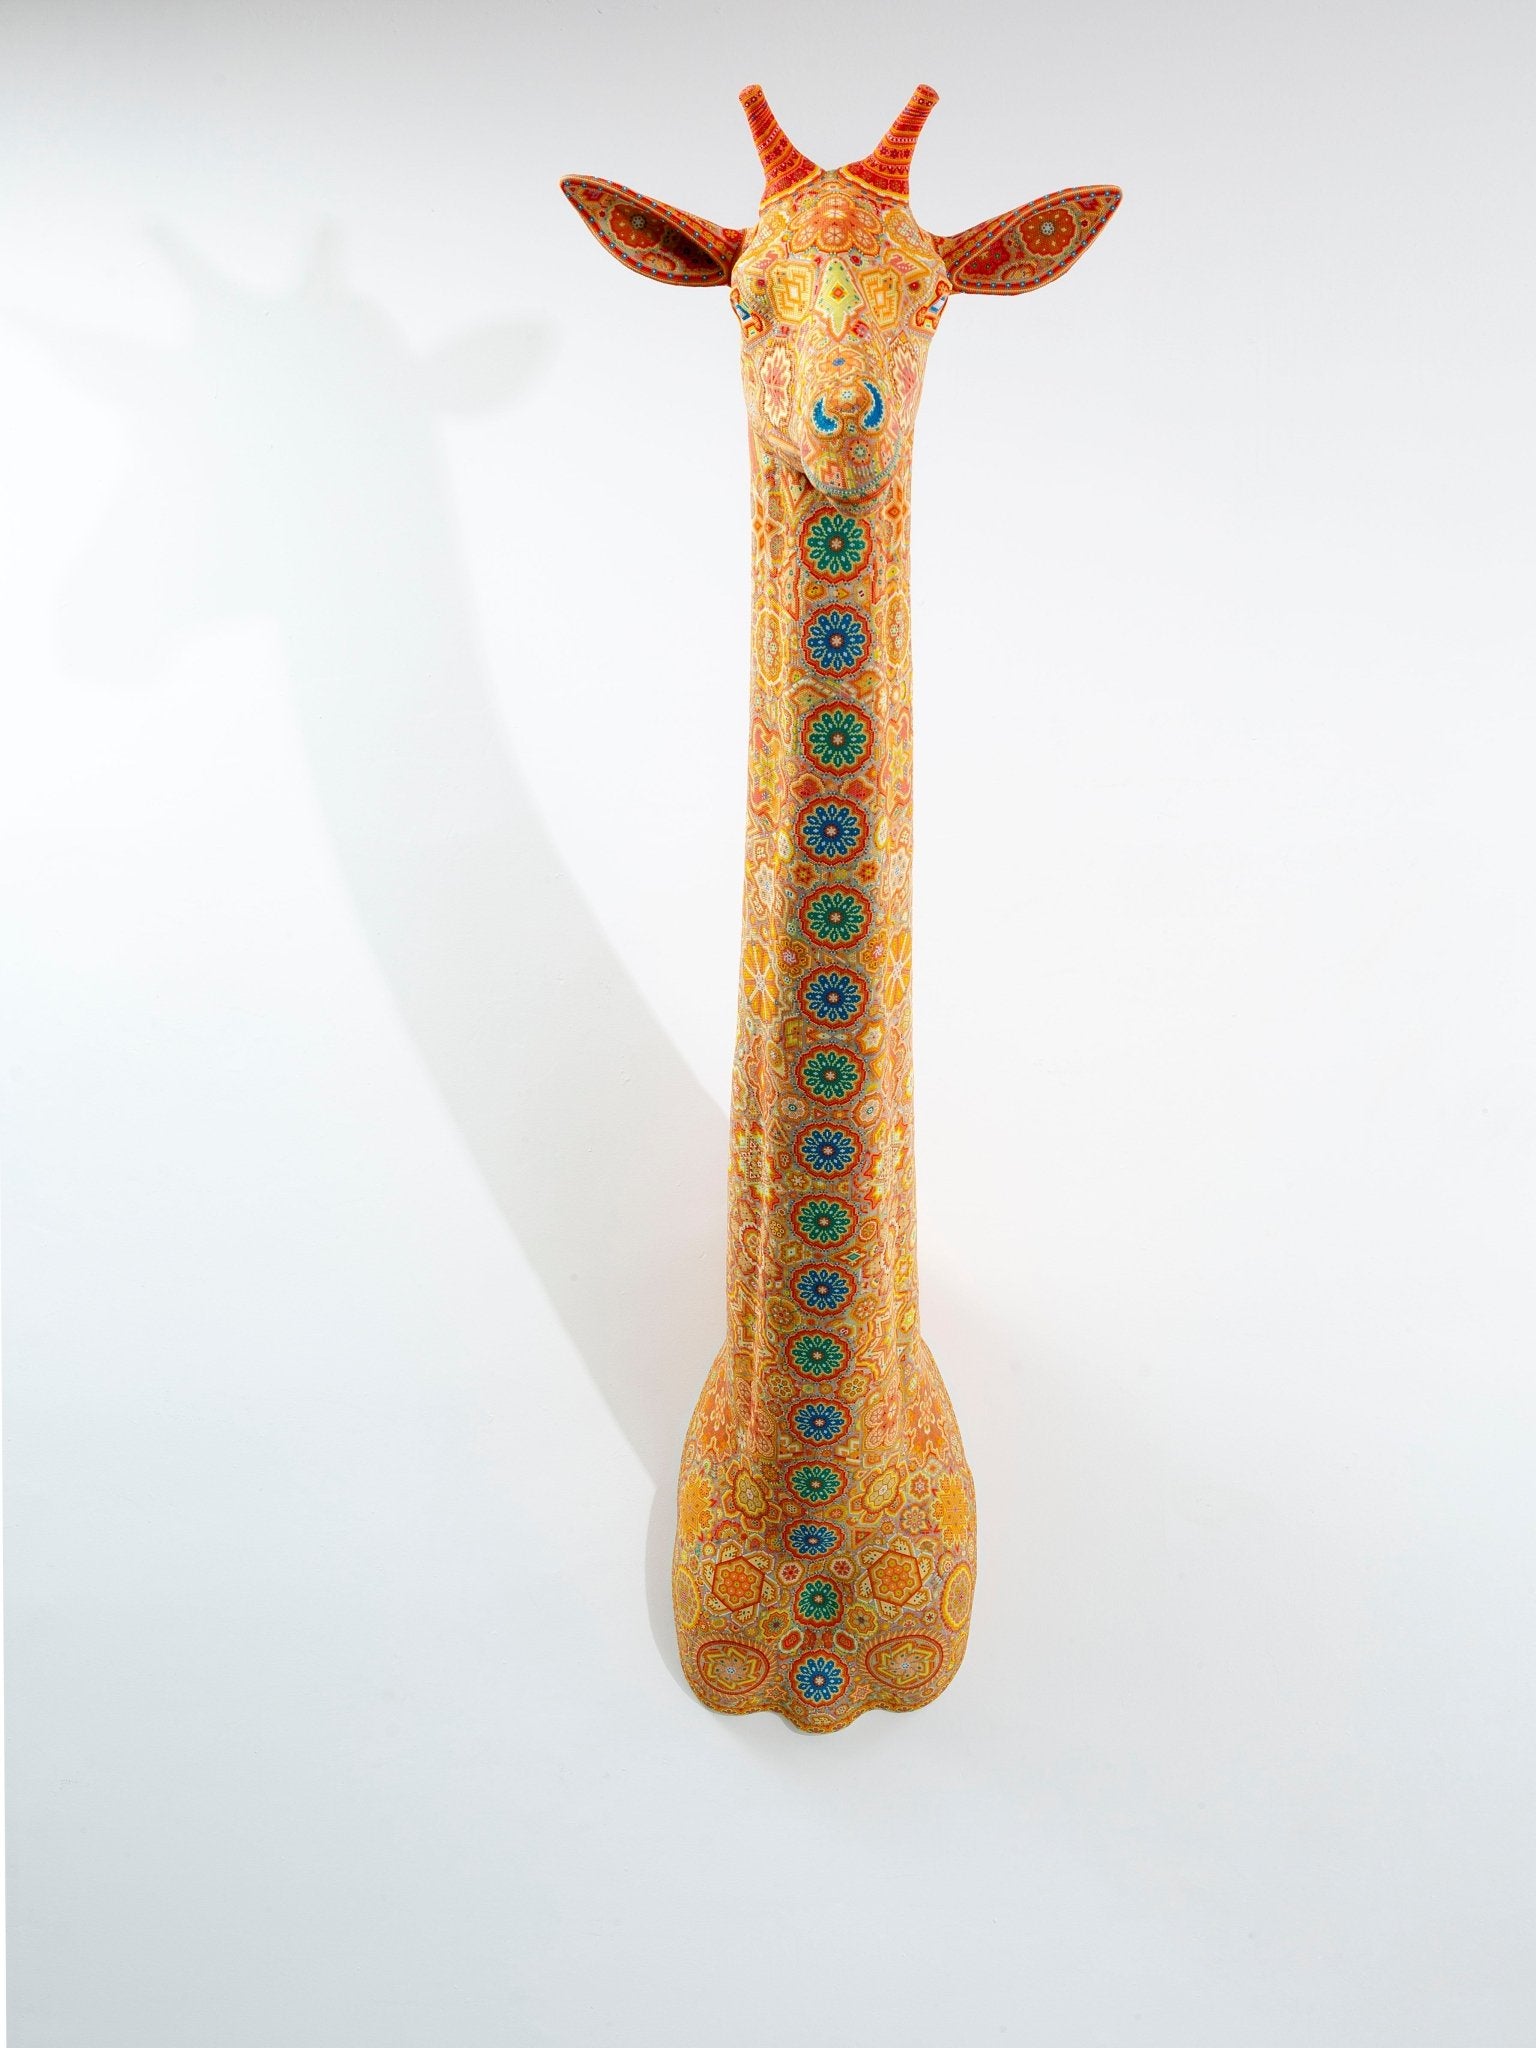 Prévente - Huichol Art Sculpture - Tête de girafe - Wirikuta - Huichol Art - Marakame